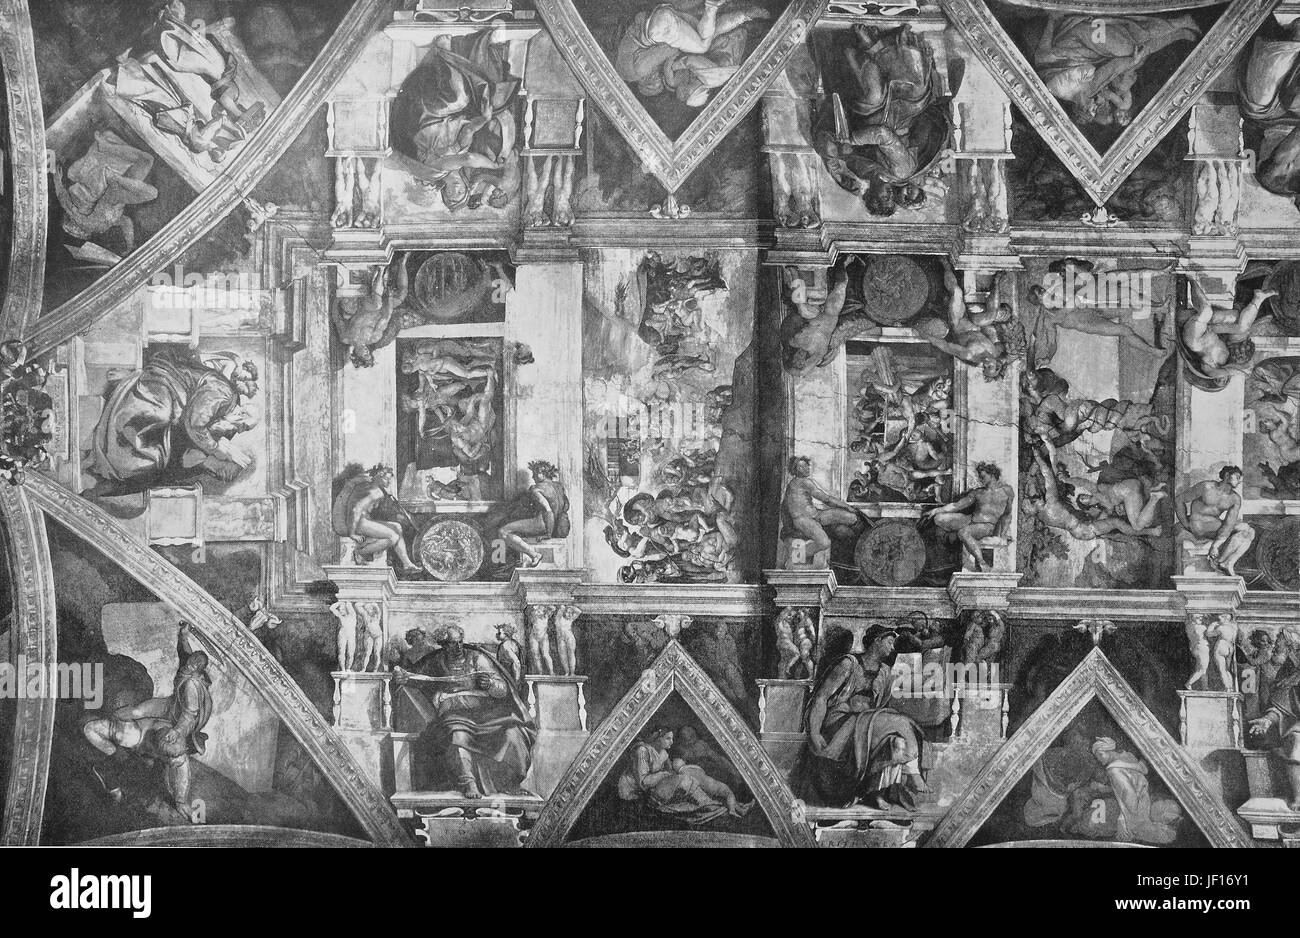 Historisches Bild eines Abschnitts von der Decke der Sixtinischen Kapelle, Michelangelo, Vatikan, Rom, Italien, verbesserte digitale Reproduktion aus einer Originalgraphik von 1890 Stockfoto